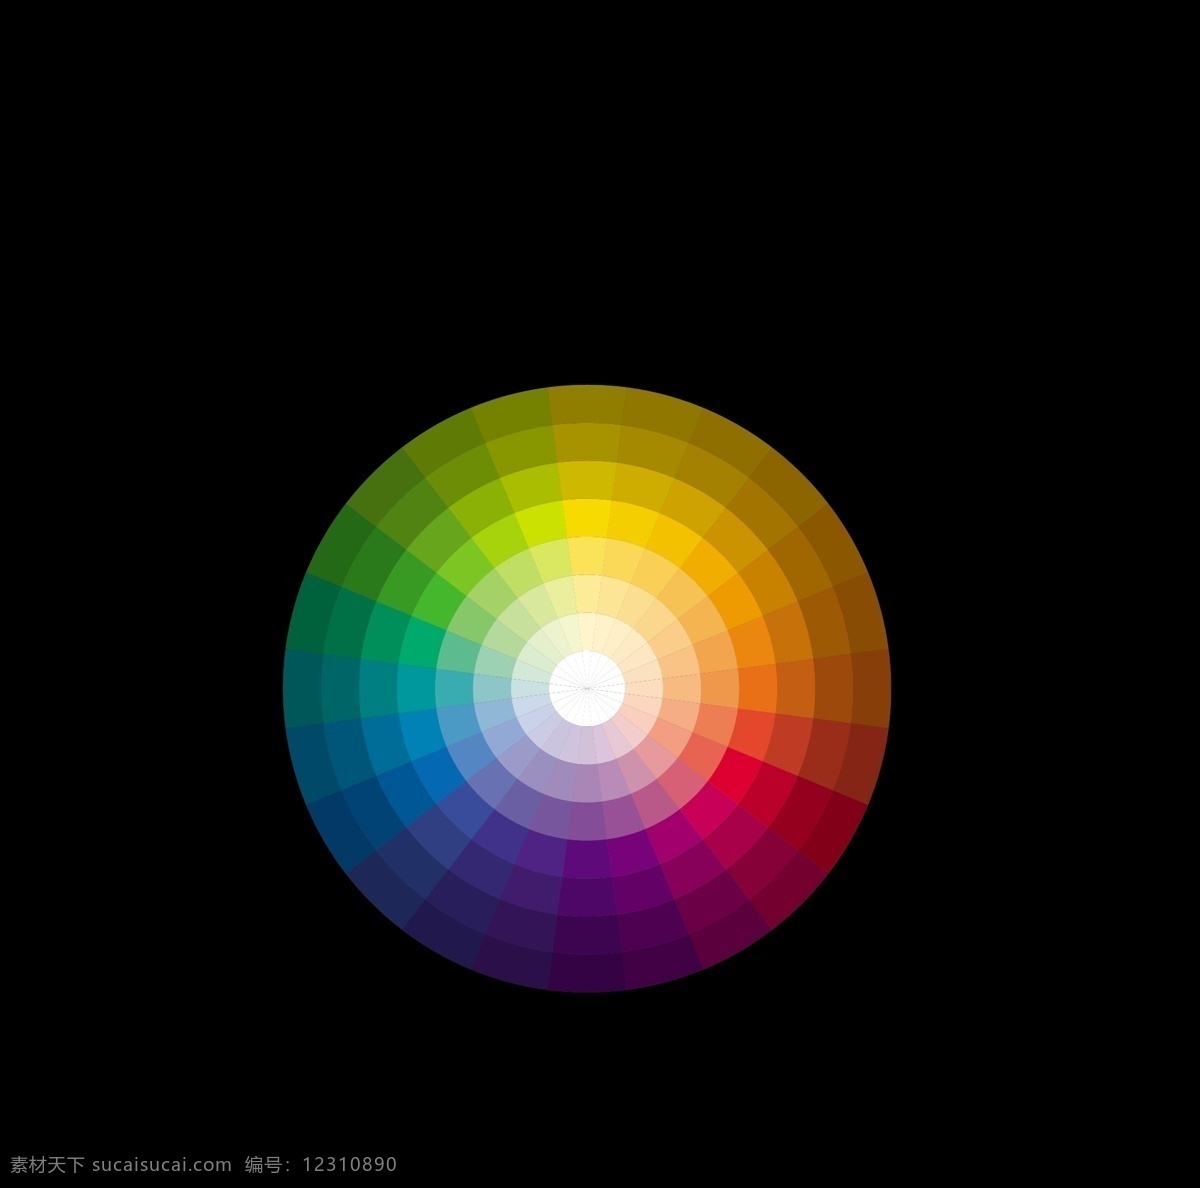 标准 色 环 色环 色彩 168色相 对比色 互补色 冷暖色 矢量素材 其他矢量 矢量